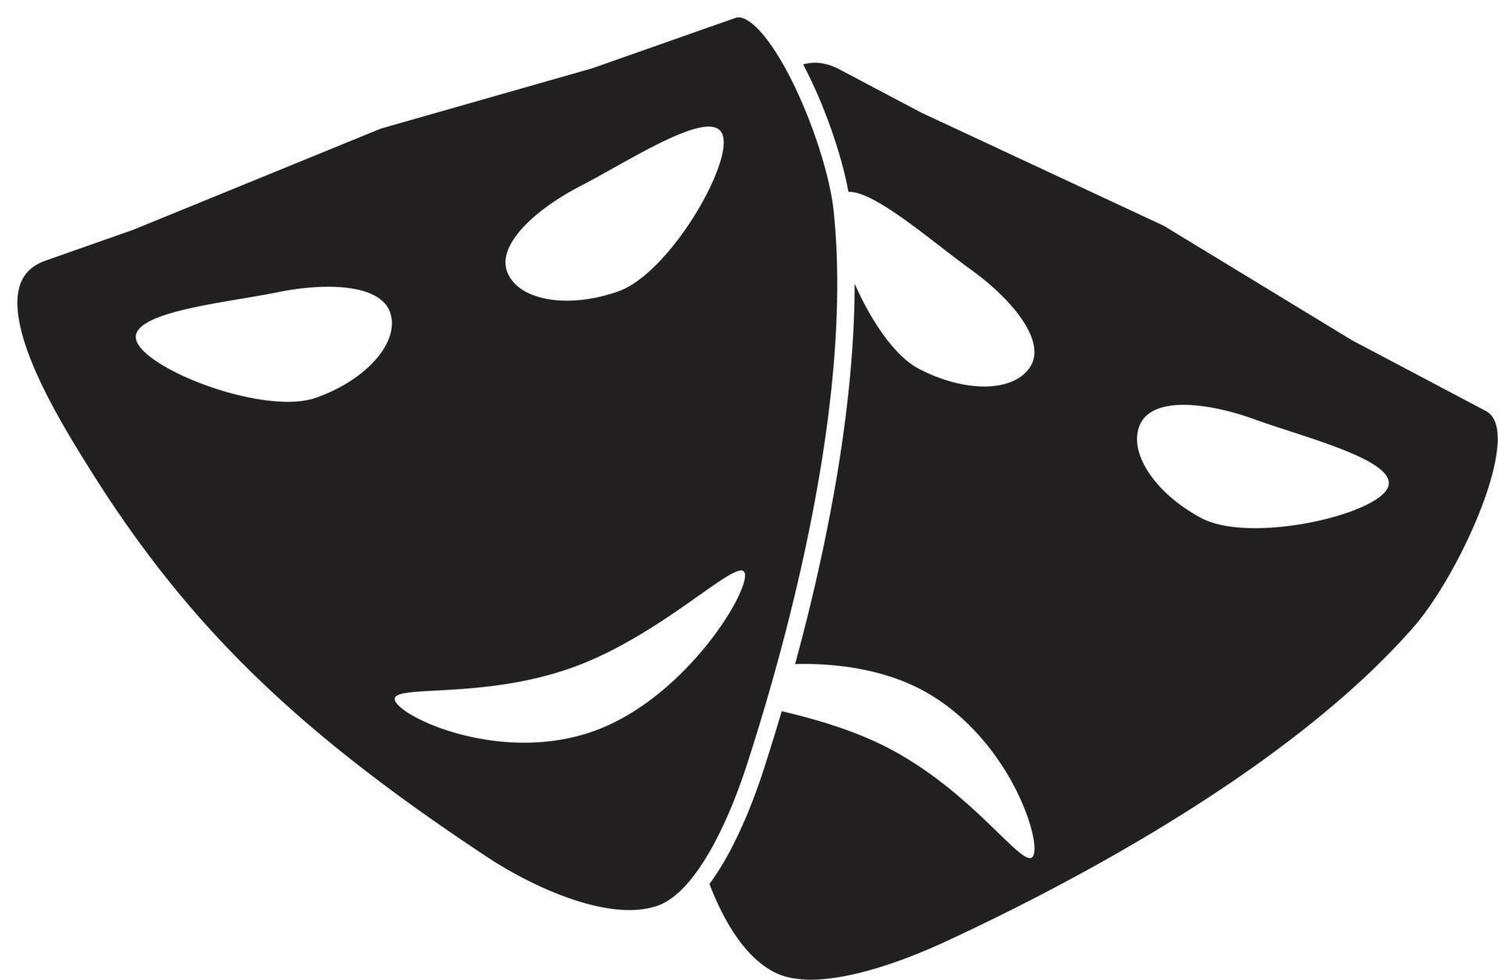 icono de máscaras de teatro. estilo plano signo de máscaras de teatro. símbolo de arte. vector